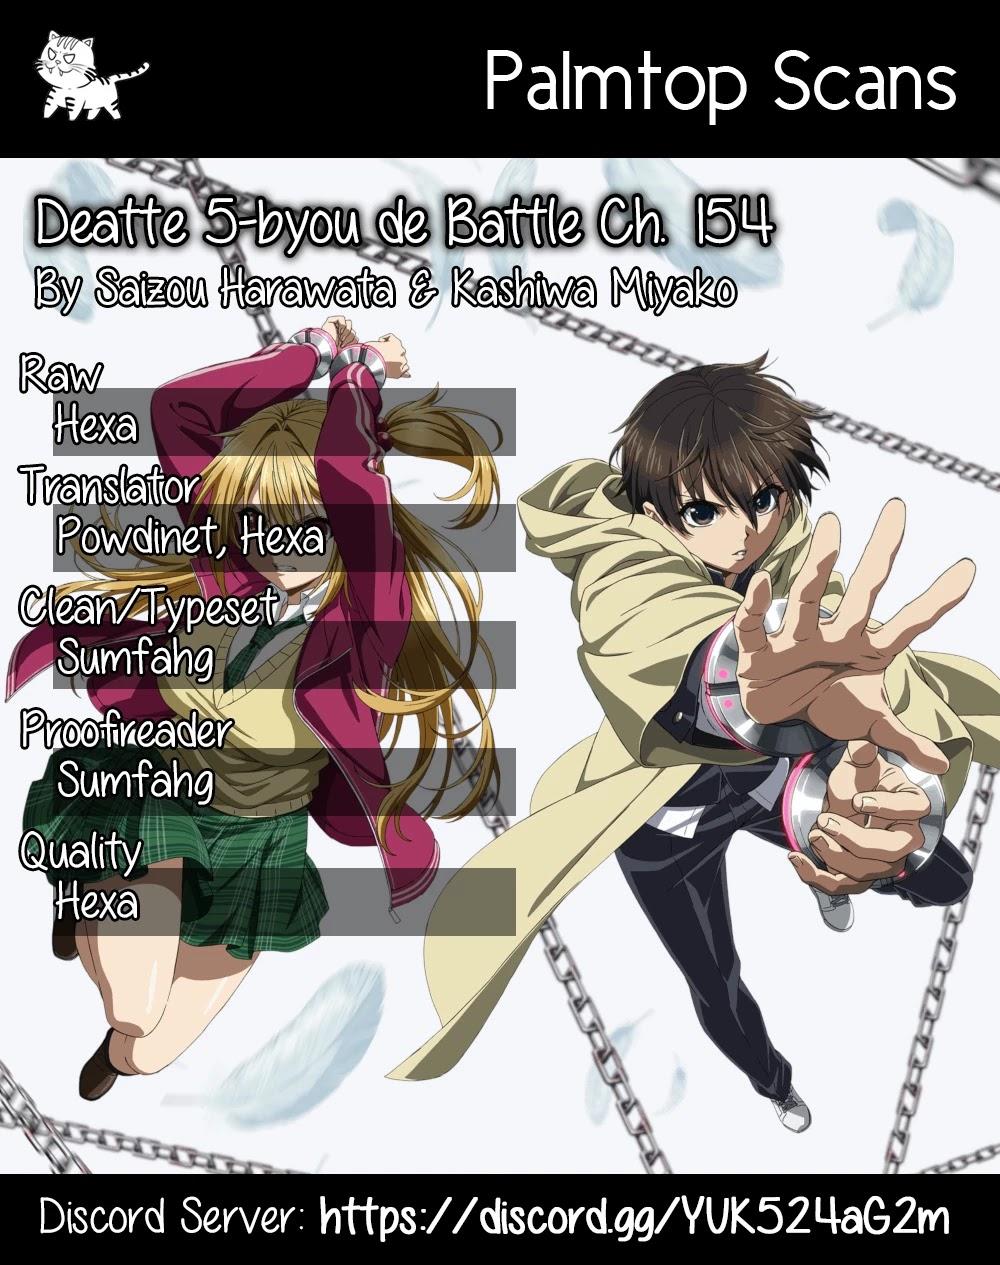 Read Deatte 5 Byou De Battle Chapter 136: Infinity Mirror on Mangakakalot